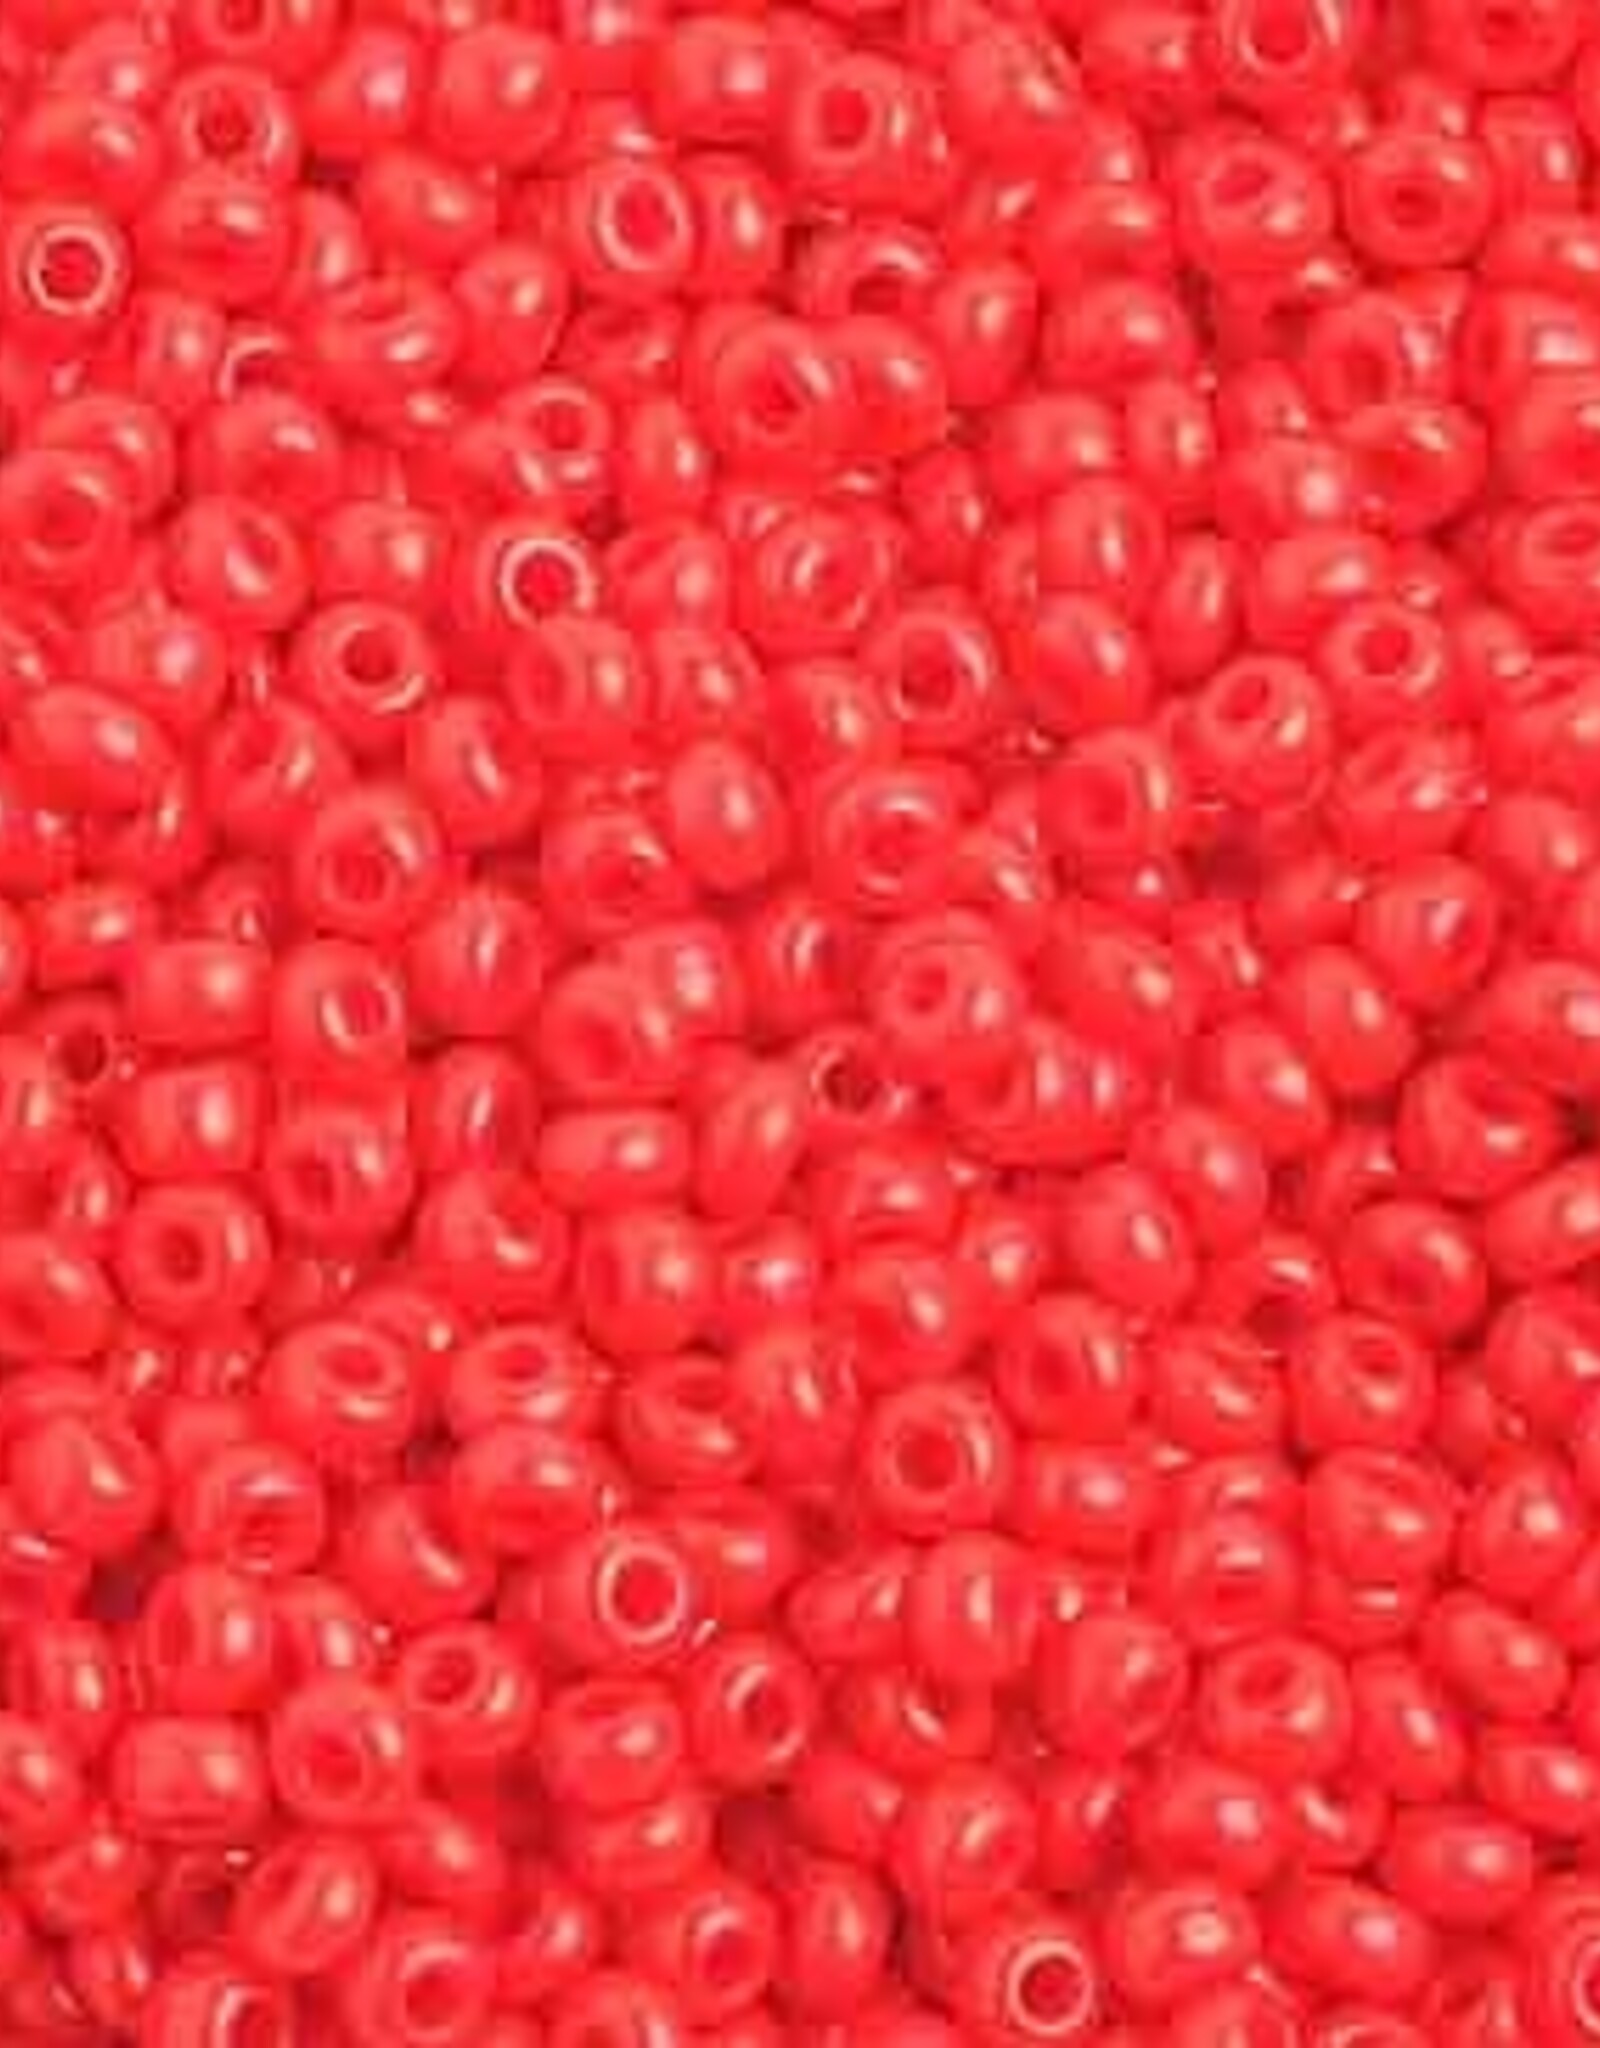 Preciosa Czech Seed Bead Seed Beads 10/0 Op. Light Red Strung 1025